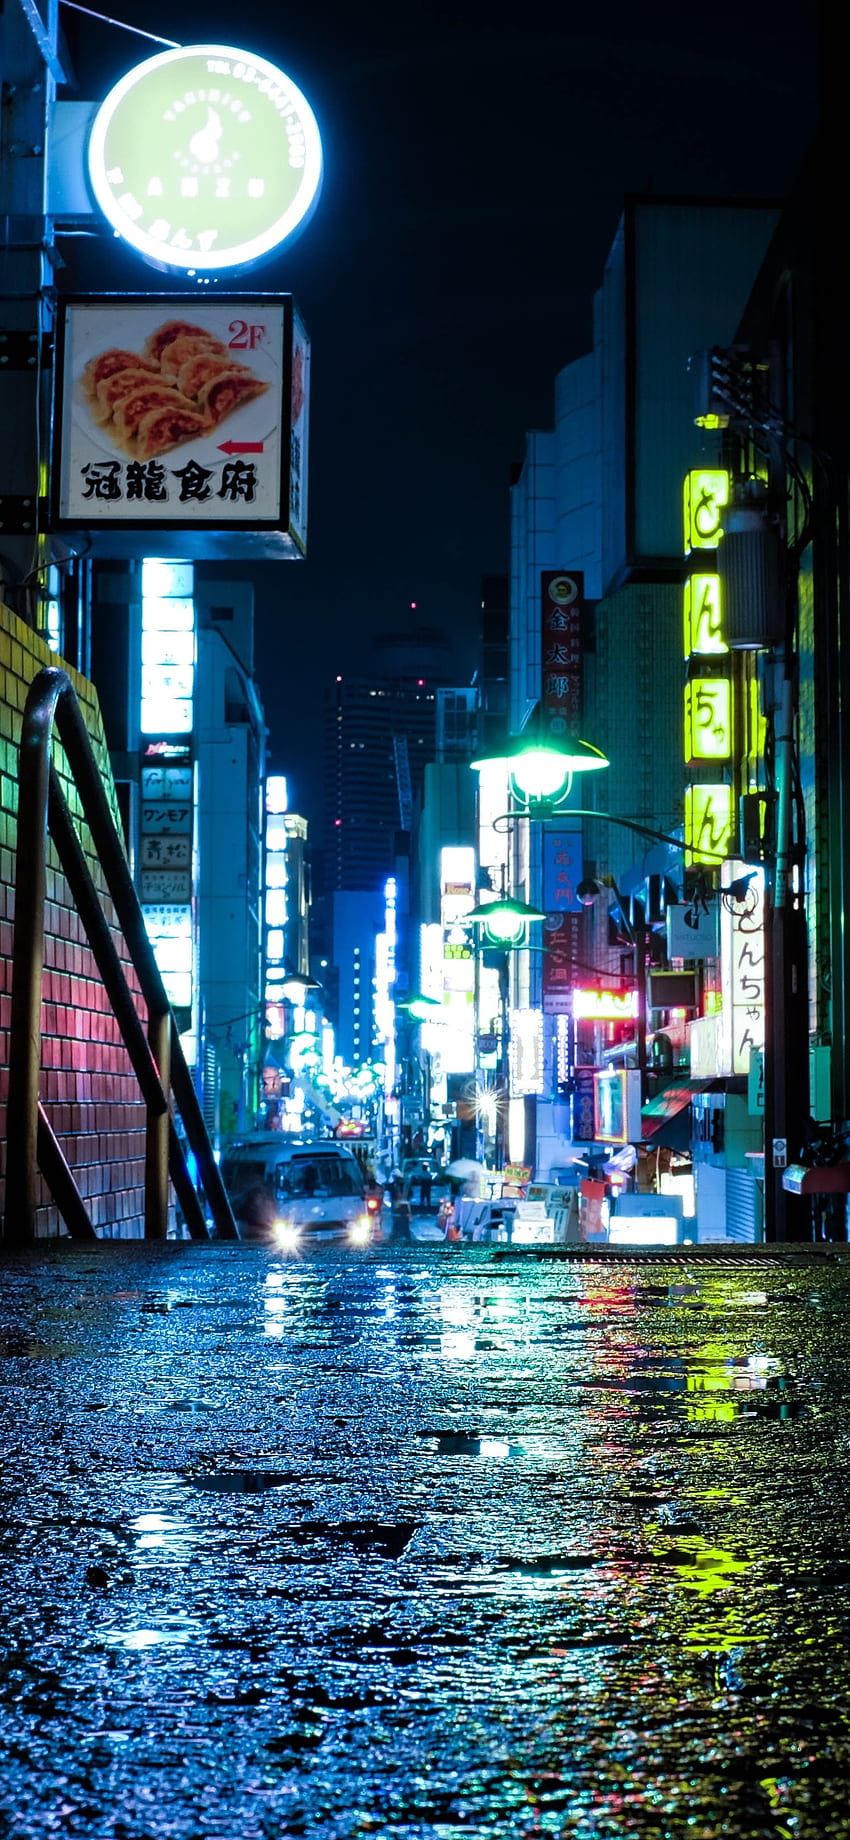 Thưởng thức Tokyo trong tầm tay với bộ sưu tập hình nền iPhone XS MAX đầy đèn neon sáng bừng. Bạn sẽ được đắm chìm trong không khí thành phố vui nhộn và đầy năng lượng. Nhấn vào hình ảnh để khám phá thế giới đô thị của Tokyo.